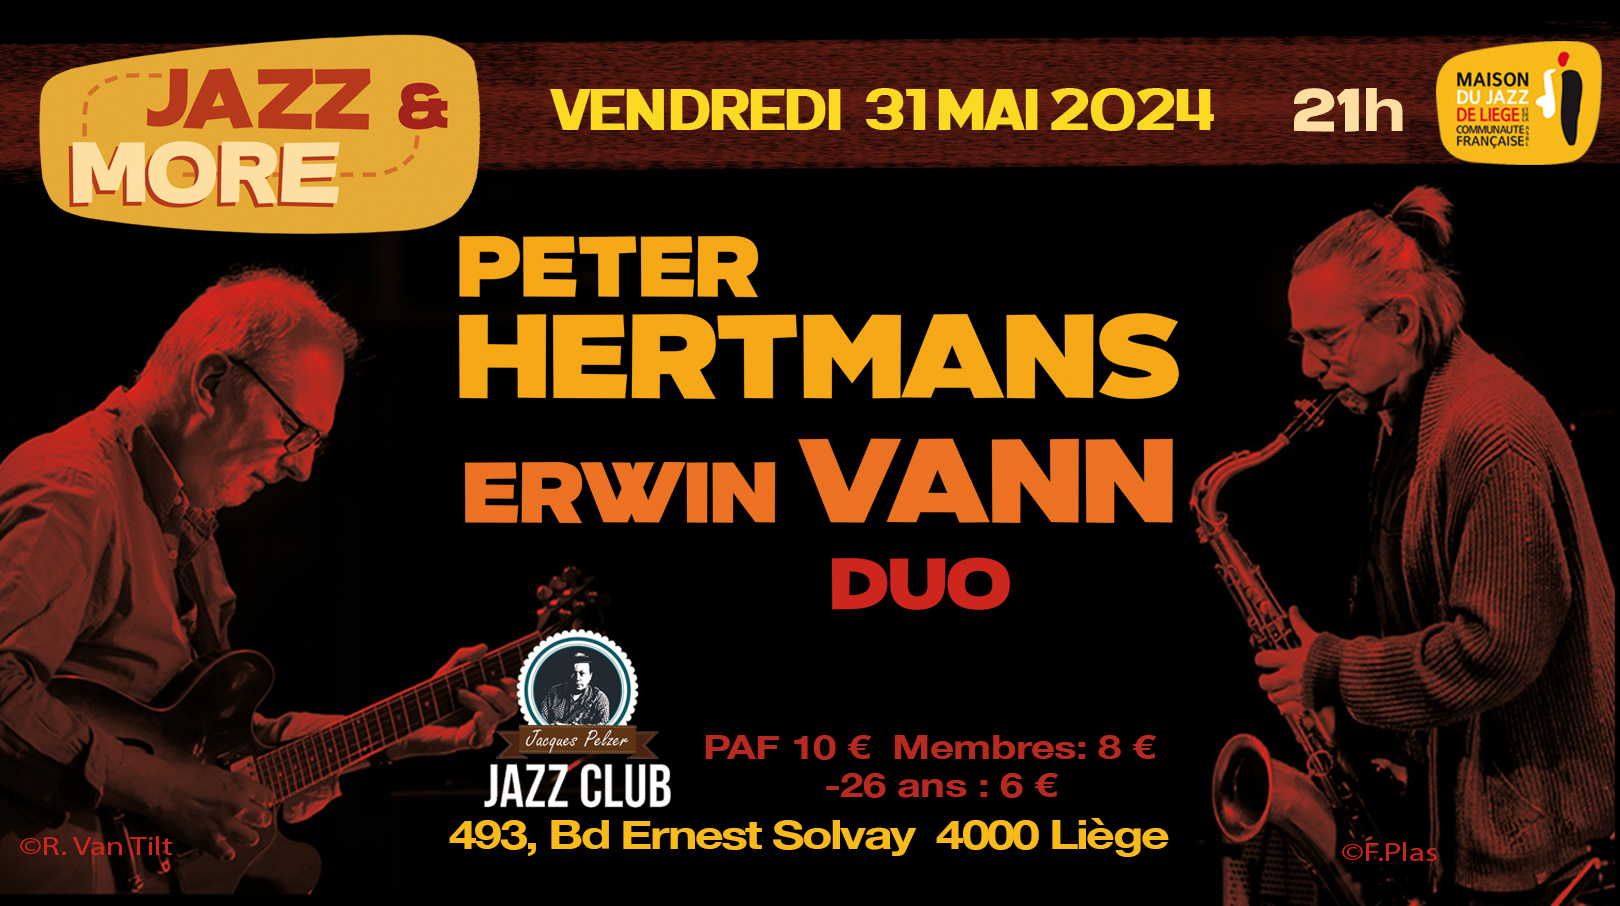 Concert Jazz&More: Peter Hertmans & Erwin Vann